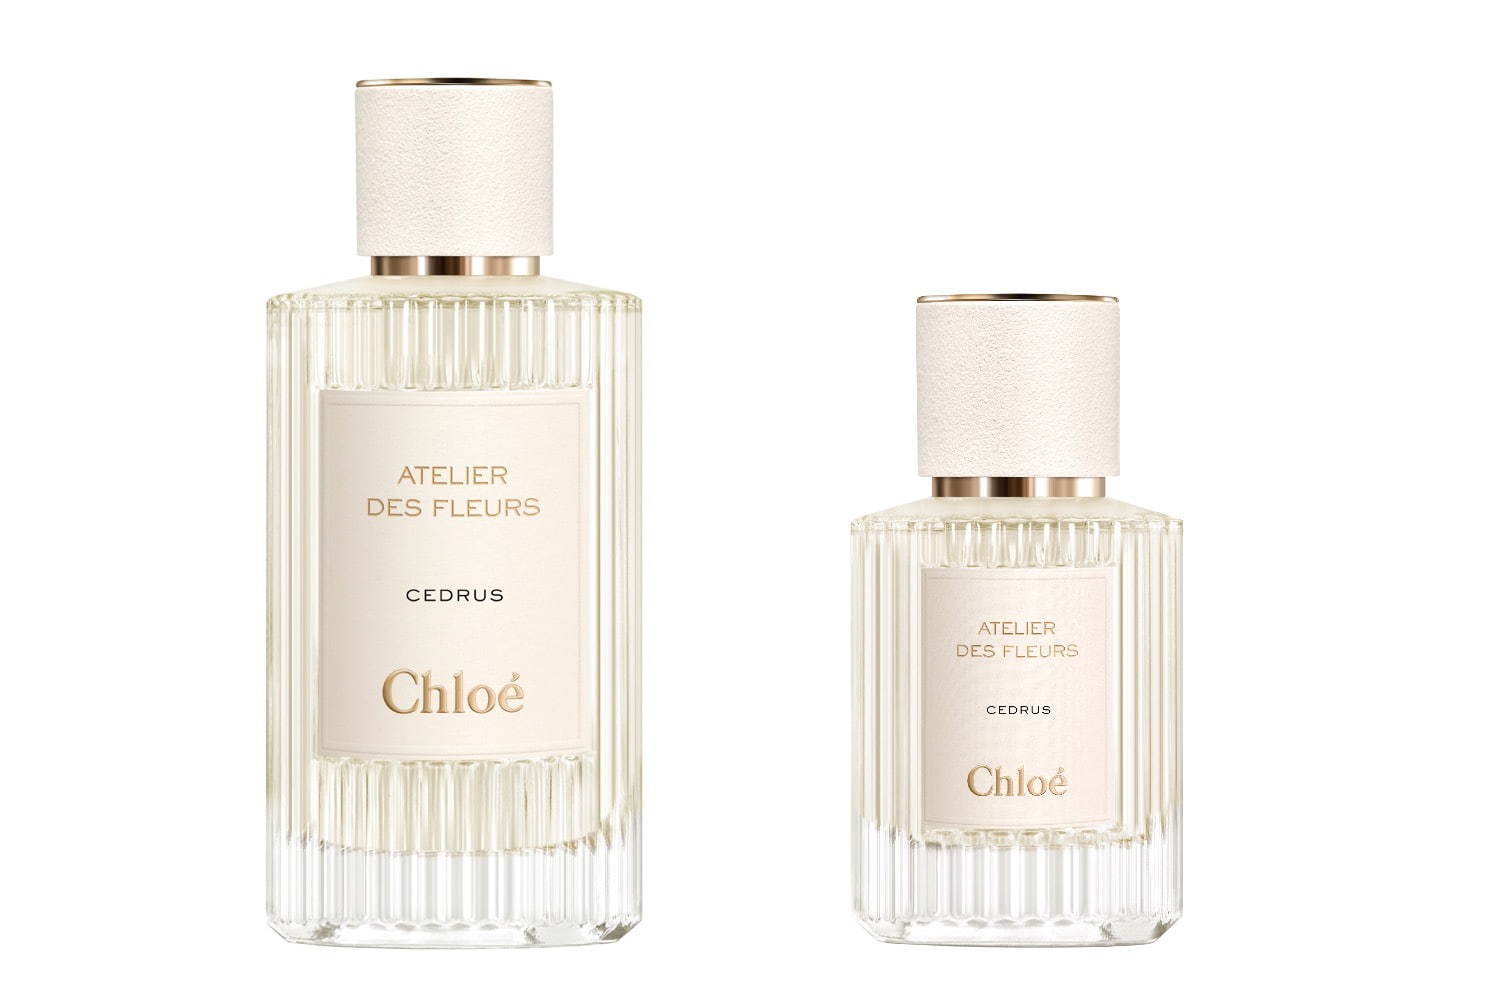 クロエの新作香水 アトリエ デ フルール 好きな香りを重ねて楽しむ 香りのブーケ ファッションプレス